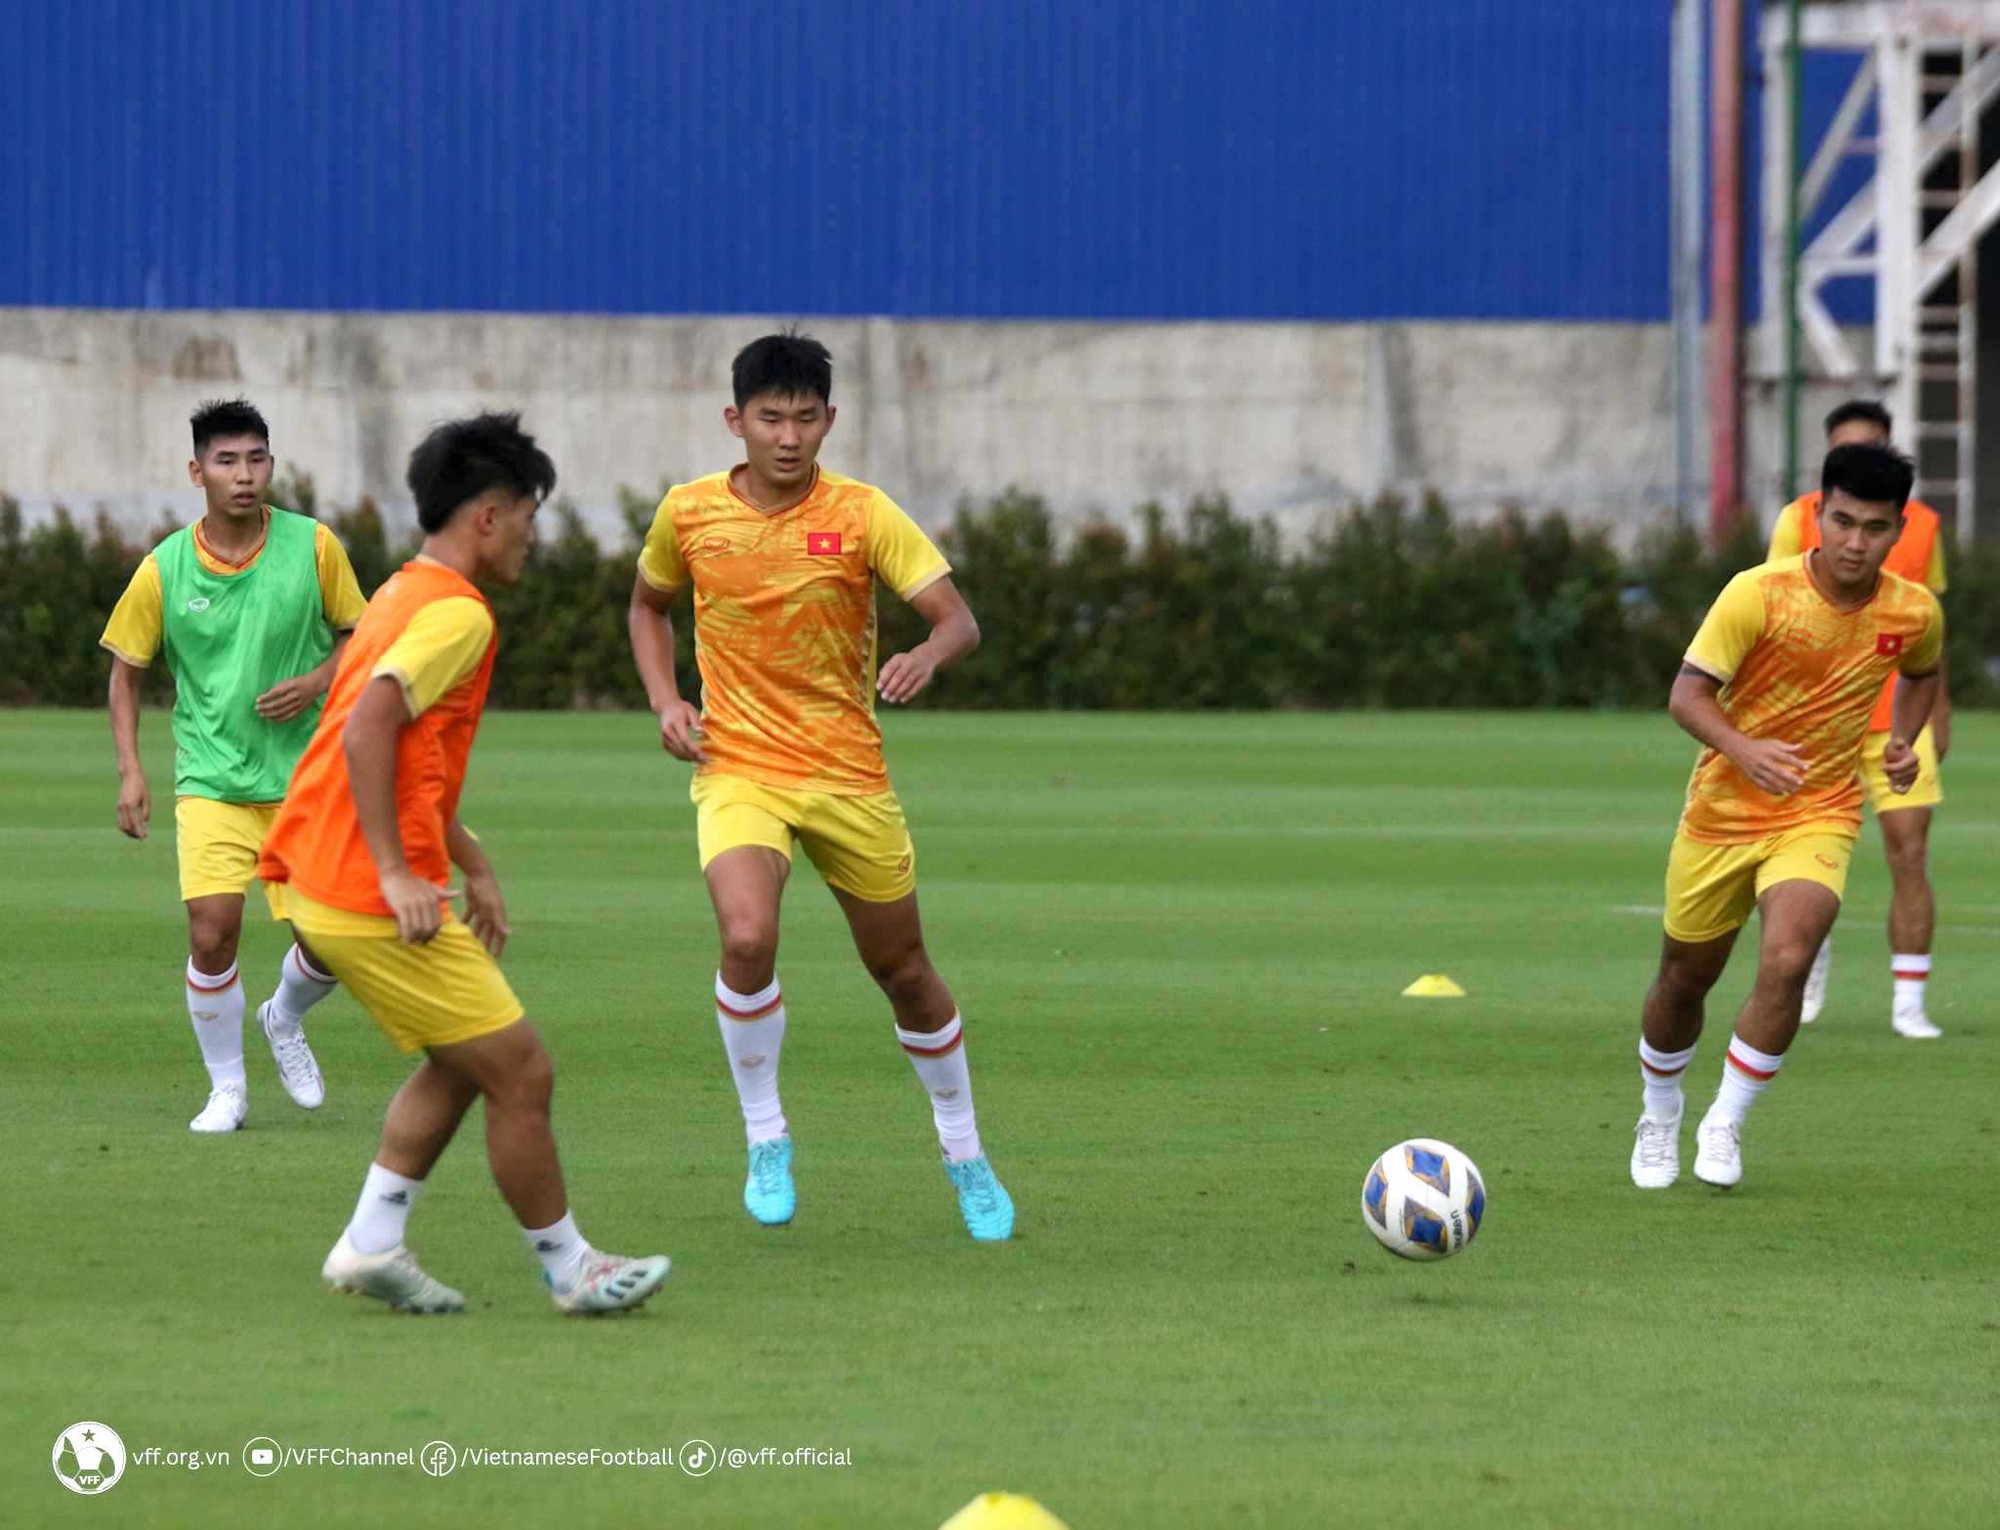 Đội tuyển U.23 Việt Nam hứa hẹn đem đến nhiều mới mẻ ở giải U.23 Đông Nam Á